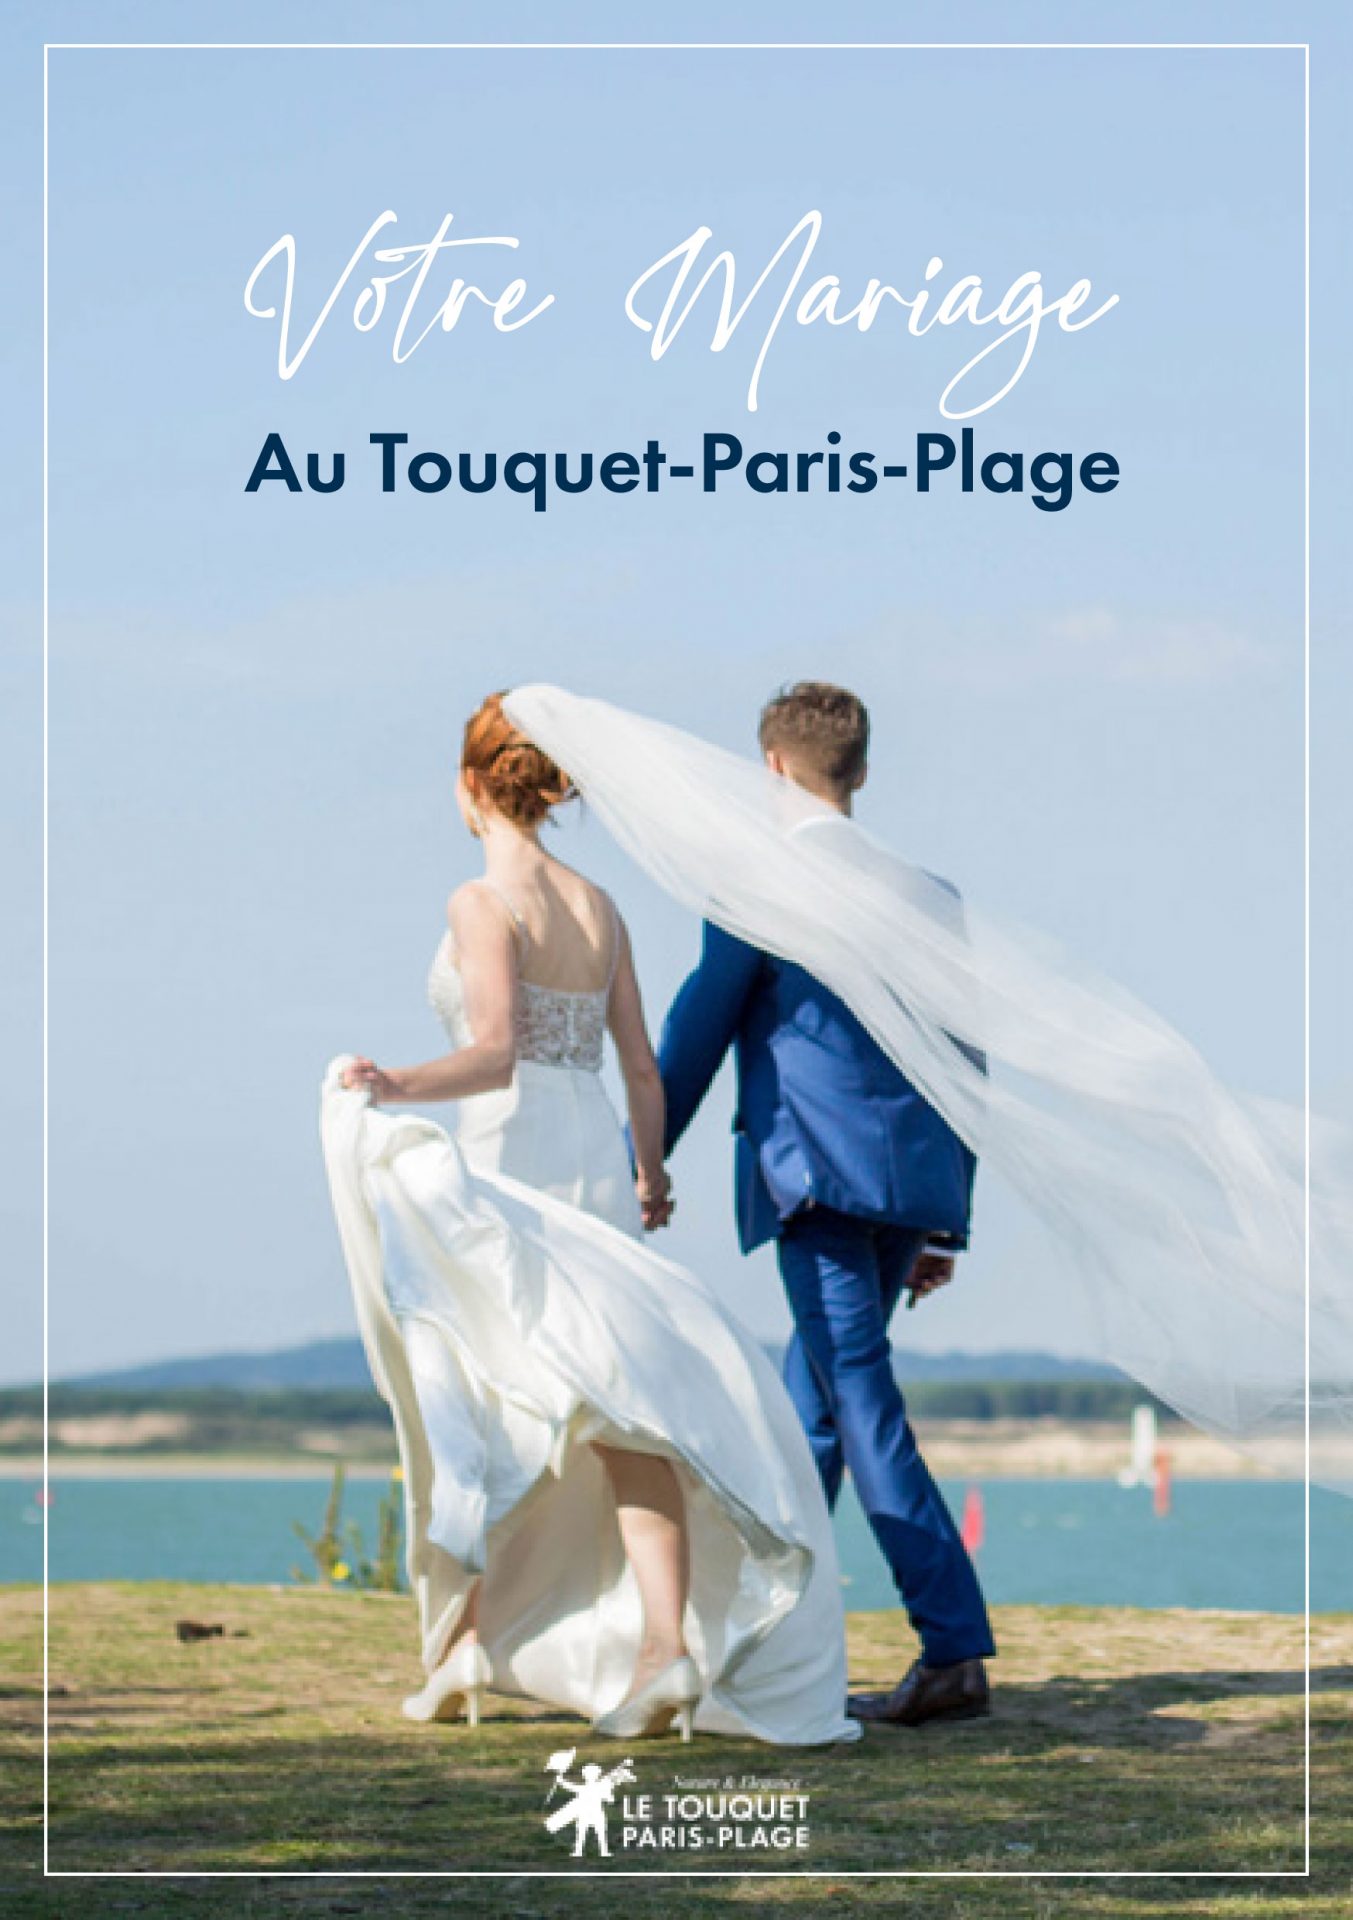 Votre mariage au Touquet-Paris-Plage